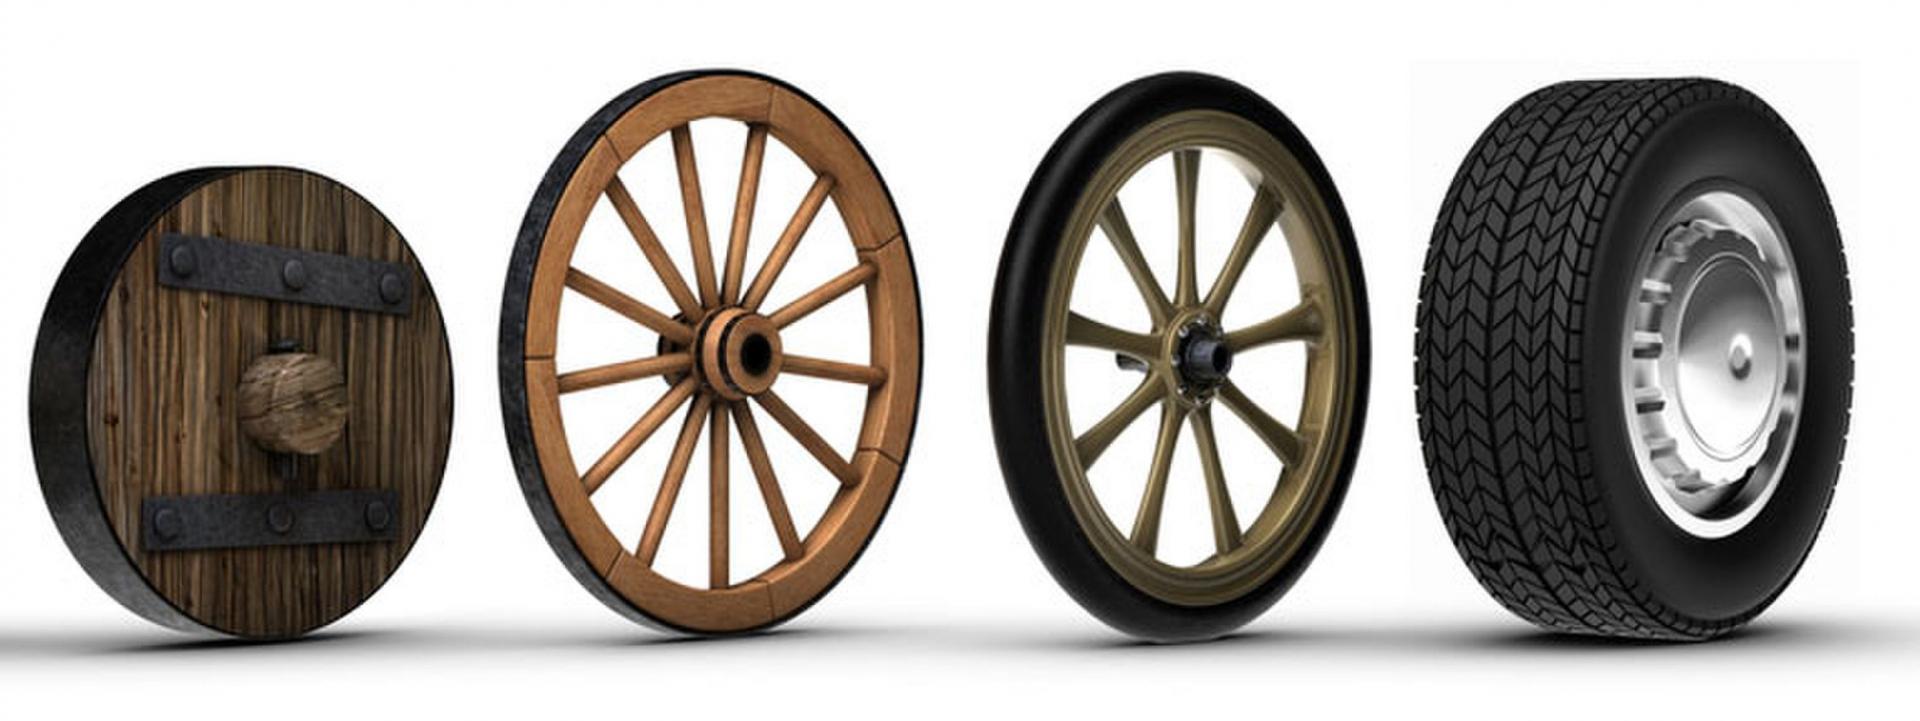 Колесо ис и. Великие изобретения человечества колесо. Изобретение колеса. Историческое колесо. Колесо от машины.